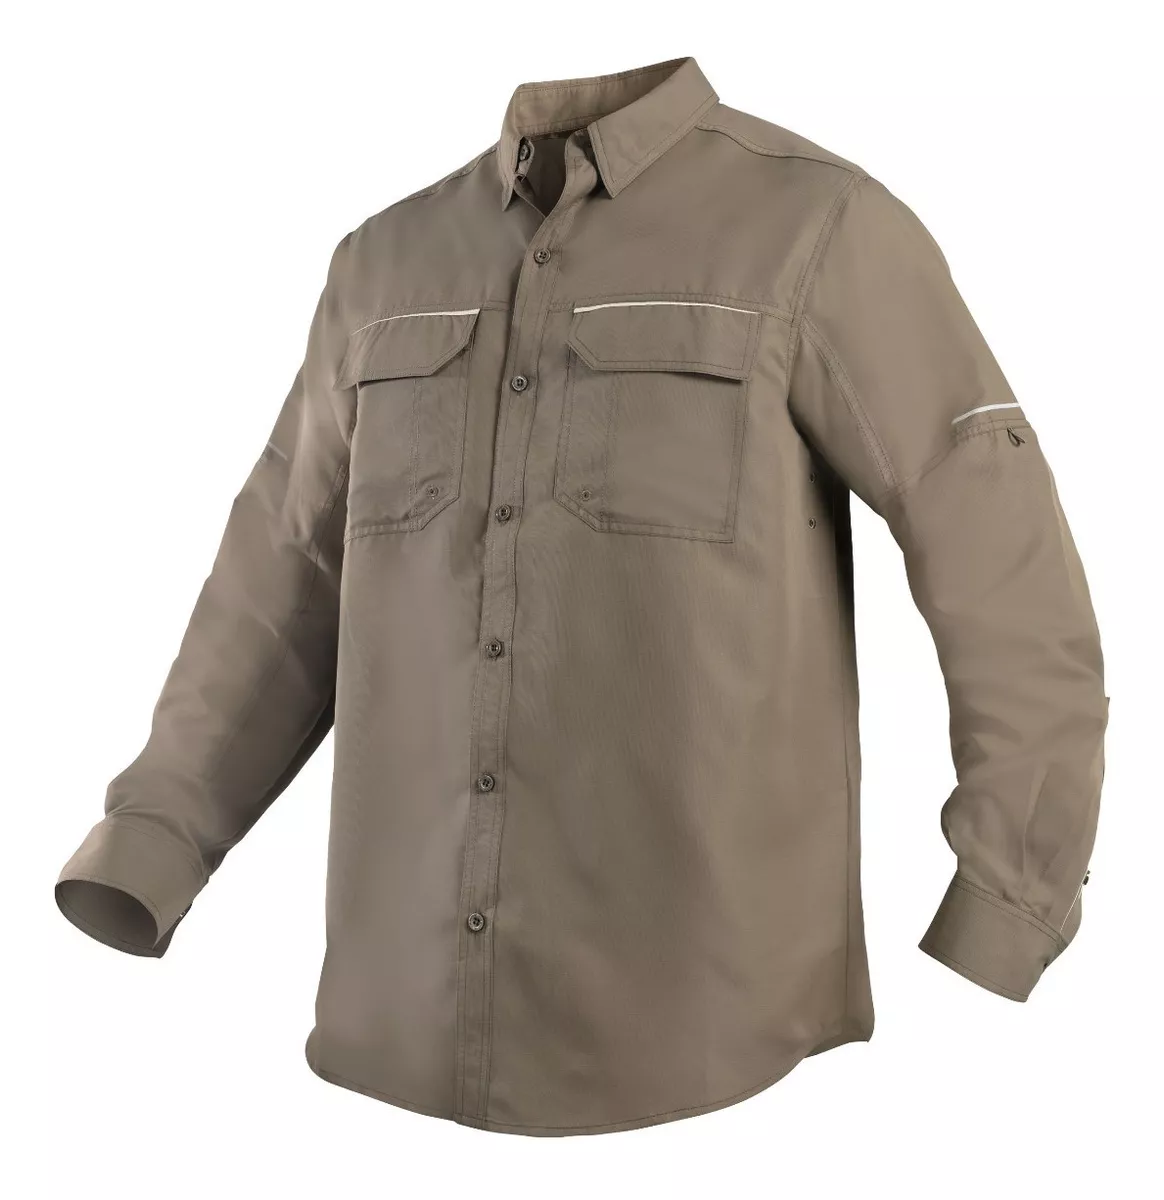 Camisa Outdoor Trekking Protección Uv Ripstop M/l Hombre